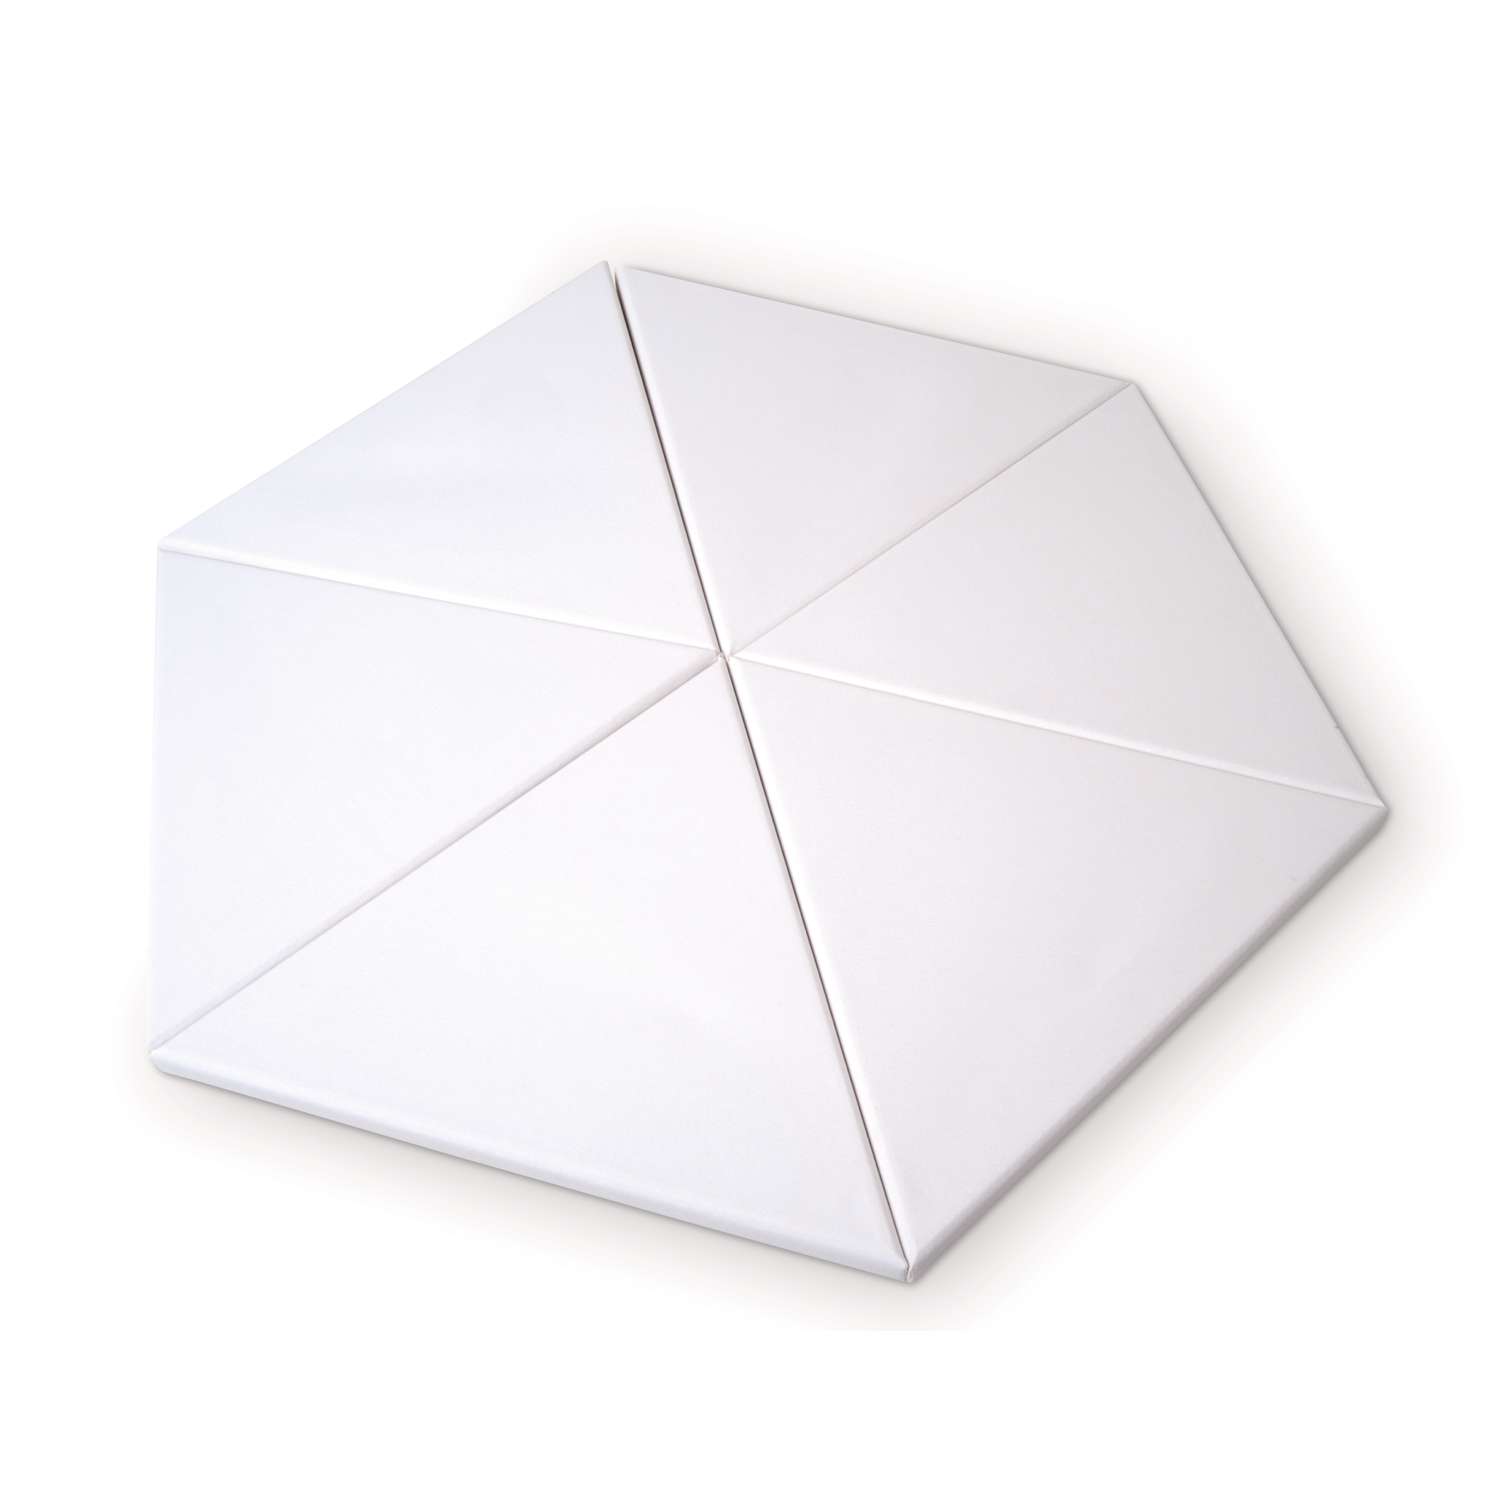 Durchmesser von 40cm Dreieck Easy Kunst Dreieckig Keilrahmen 18mm Leinwand aus 100% Leinen 350 g/m² 1 STK 